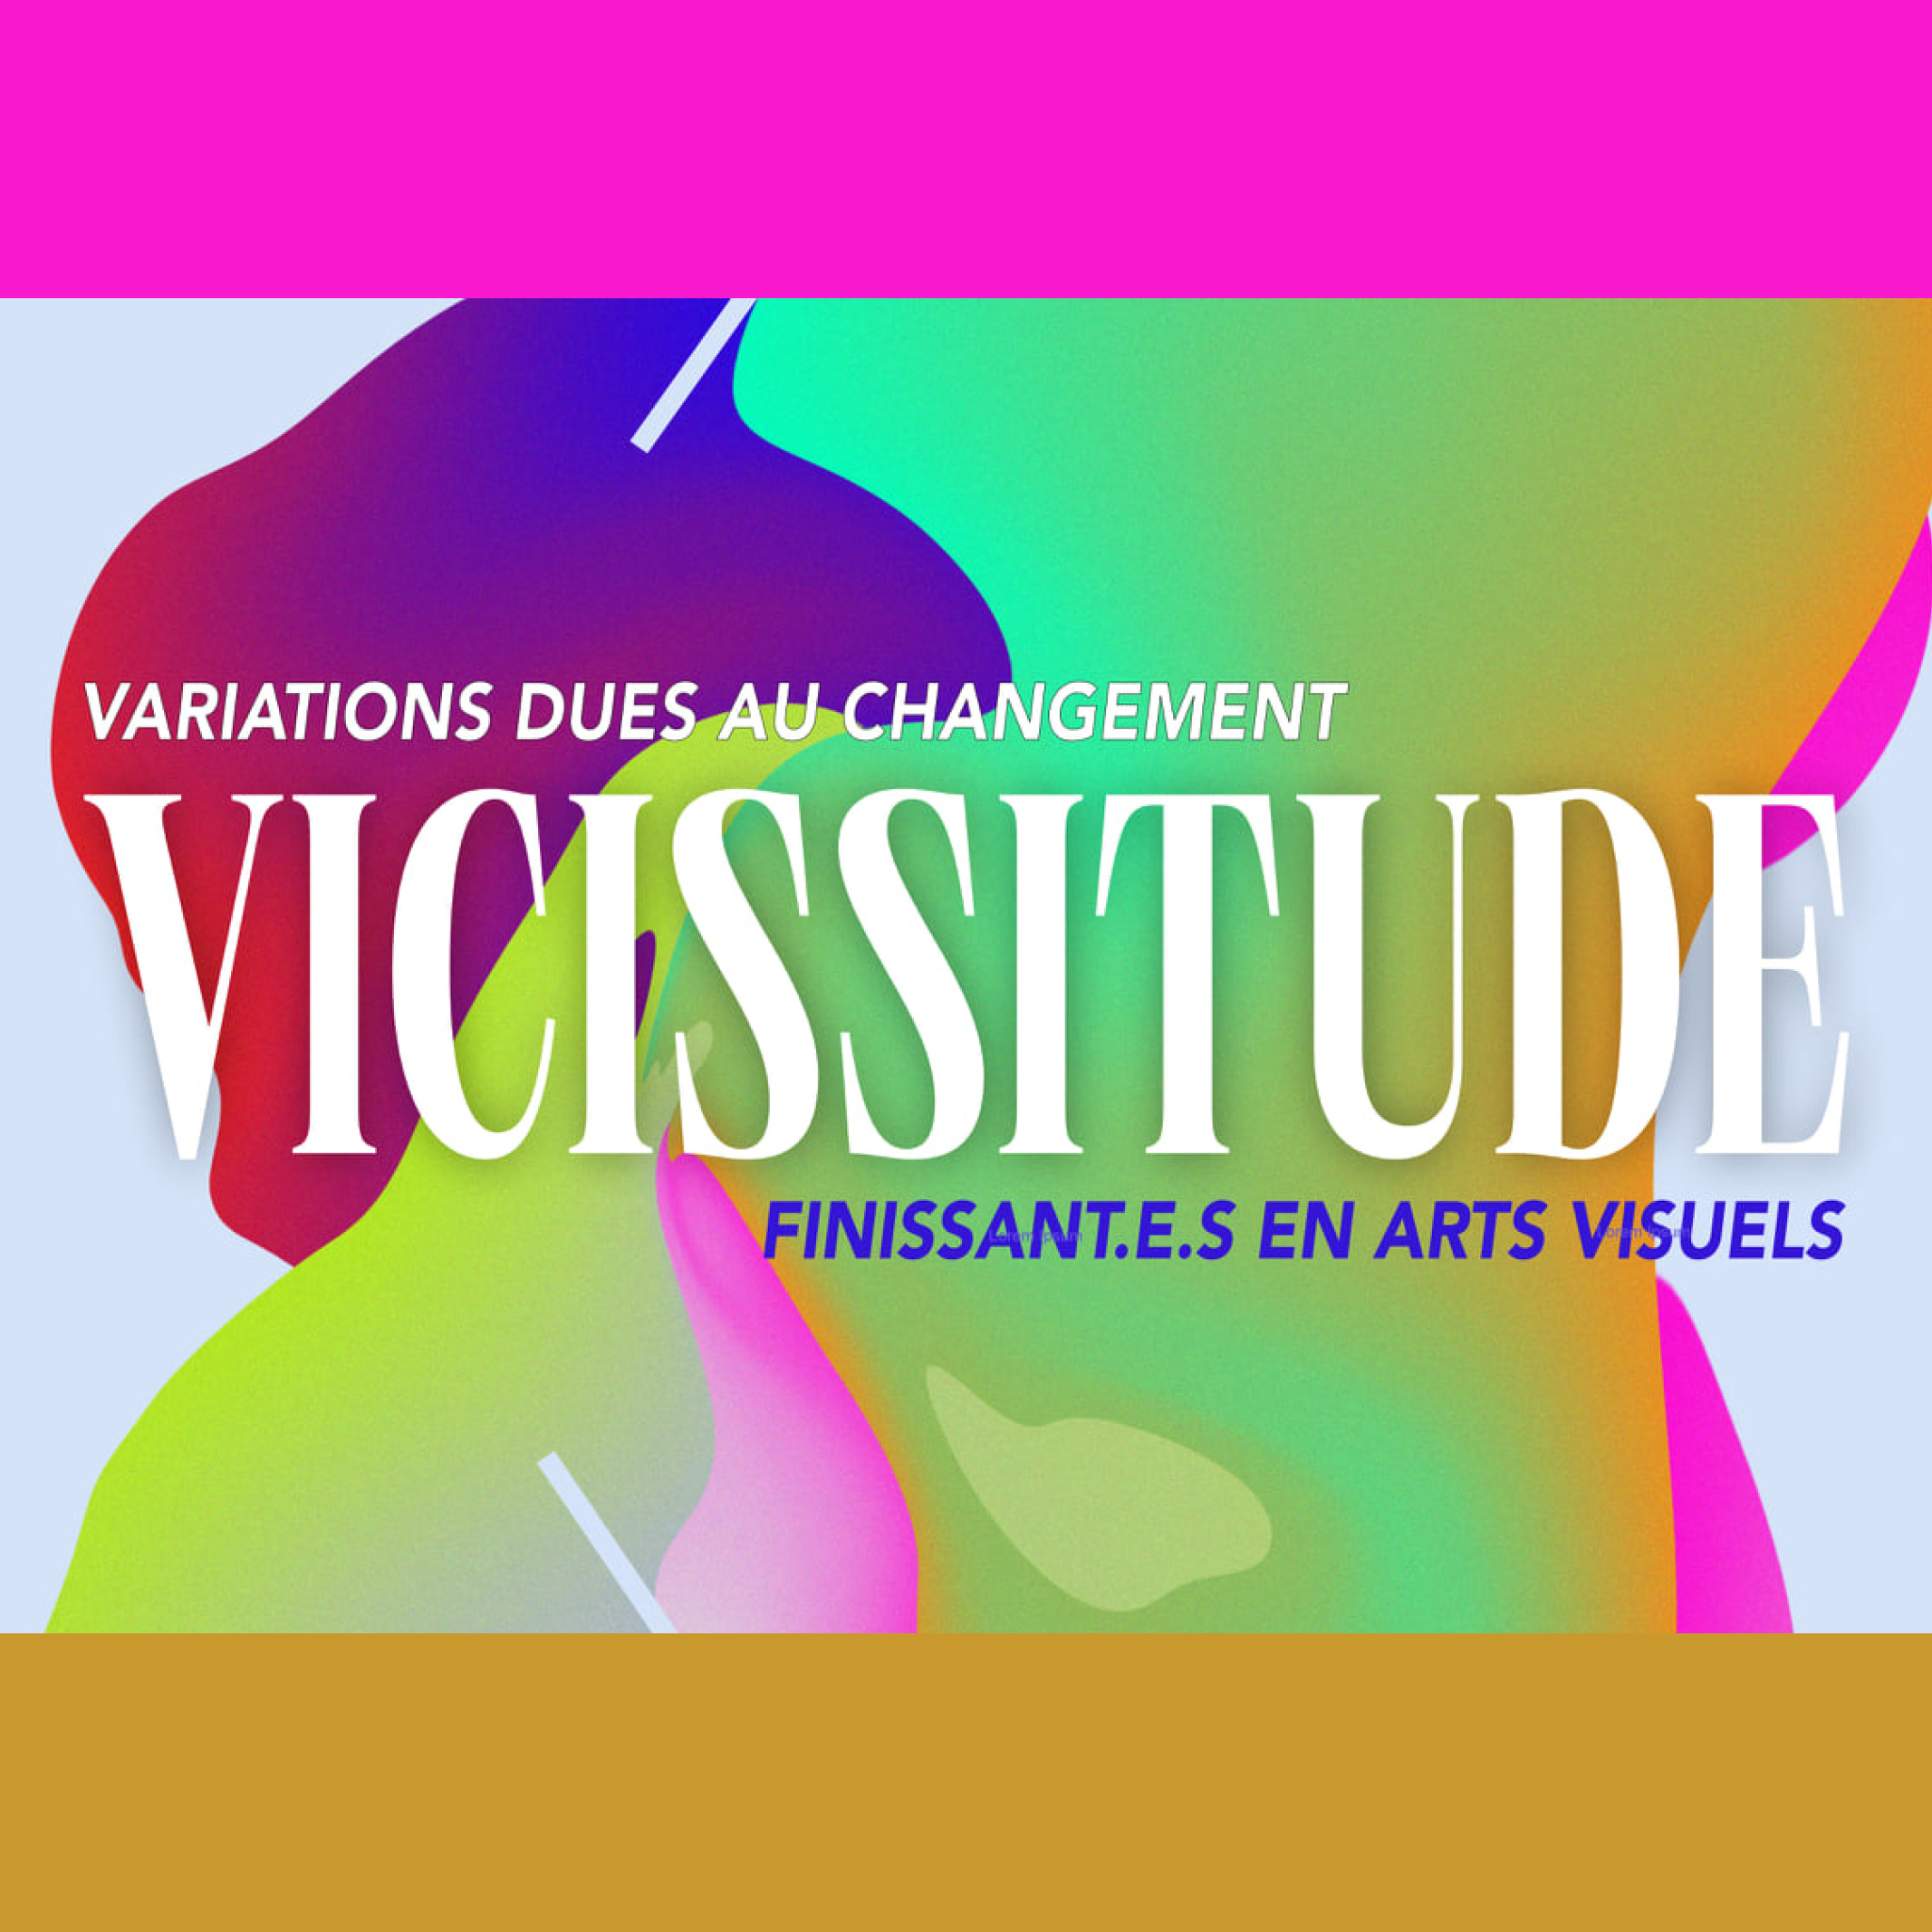 Les œuvres des étudiantes, Audrey Dufour et Justine Stozza, se sont distinguées lors de l'exposition, Vicissitude, des finissantes au programme d'Arts visuels du Cégep de Chicoutimi qui a été présentée du 10 au 13 mai 2021 au Centre Bang.